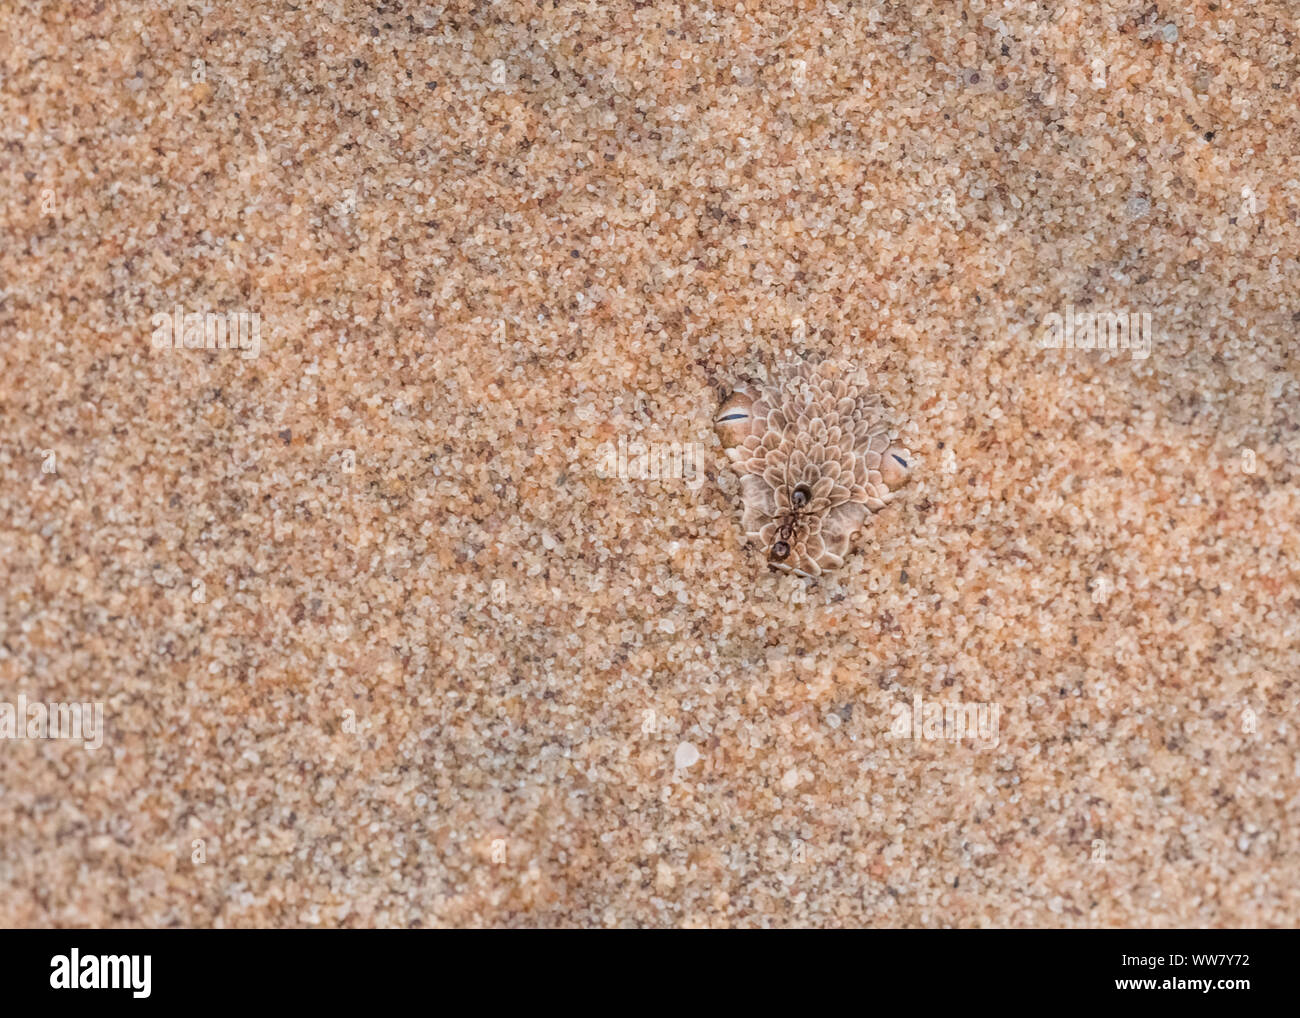 Peringuey il sommatore, solo gli occhi visibile, scavato nella calda sabbia del deserto Dorob in Namibia, ant camminando ignari sopra la testa, Foto Stock